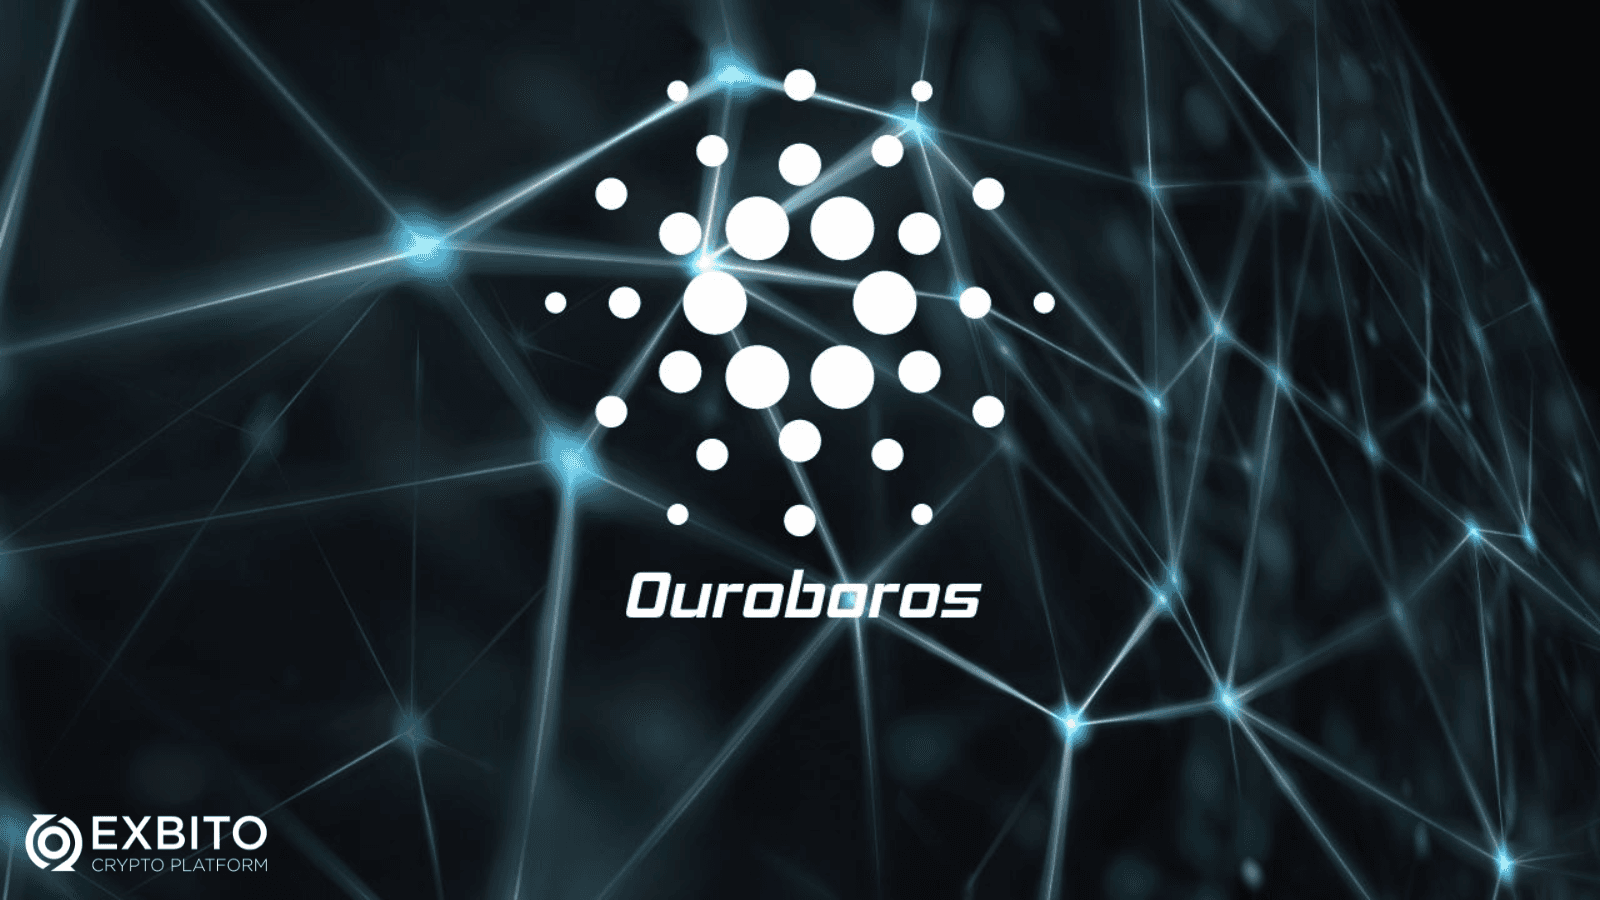 ویژگی‌های اوروبوروس (Ouroboros) چیست؟